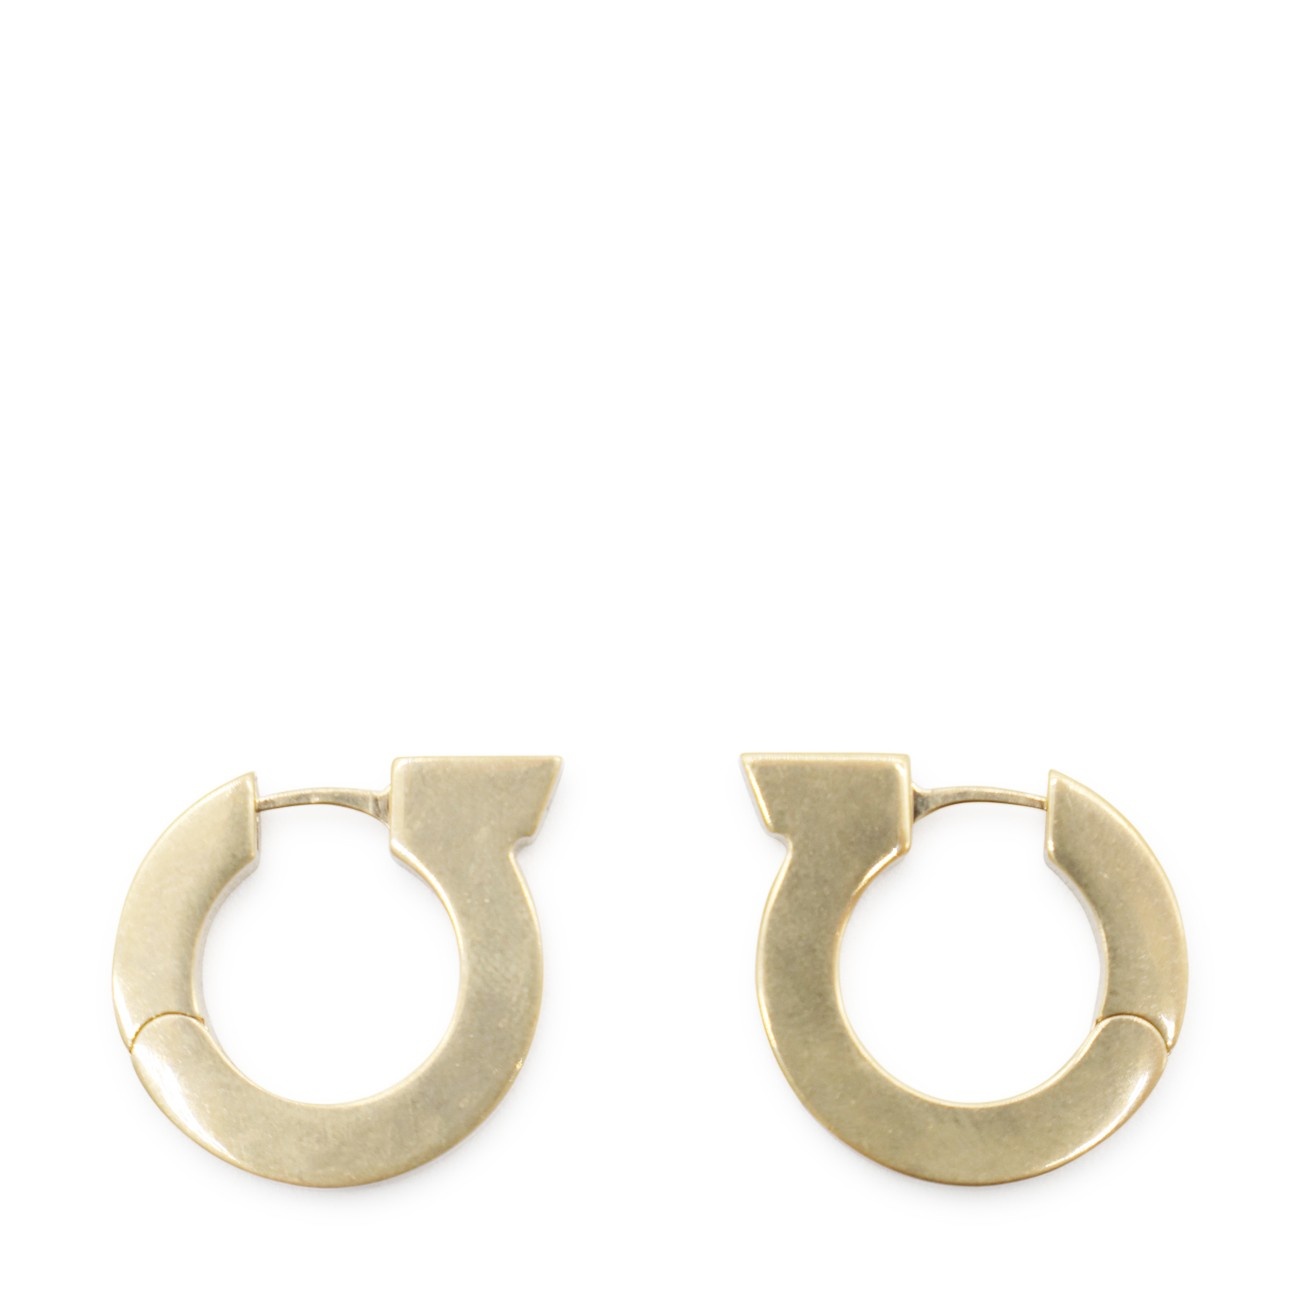 gold metal logo earrings - 2